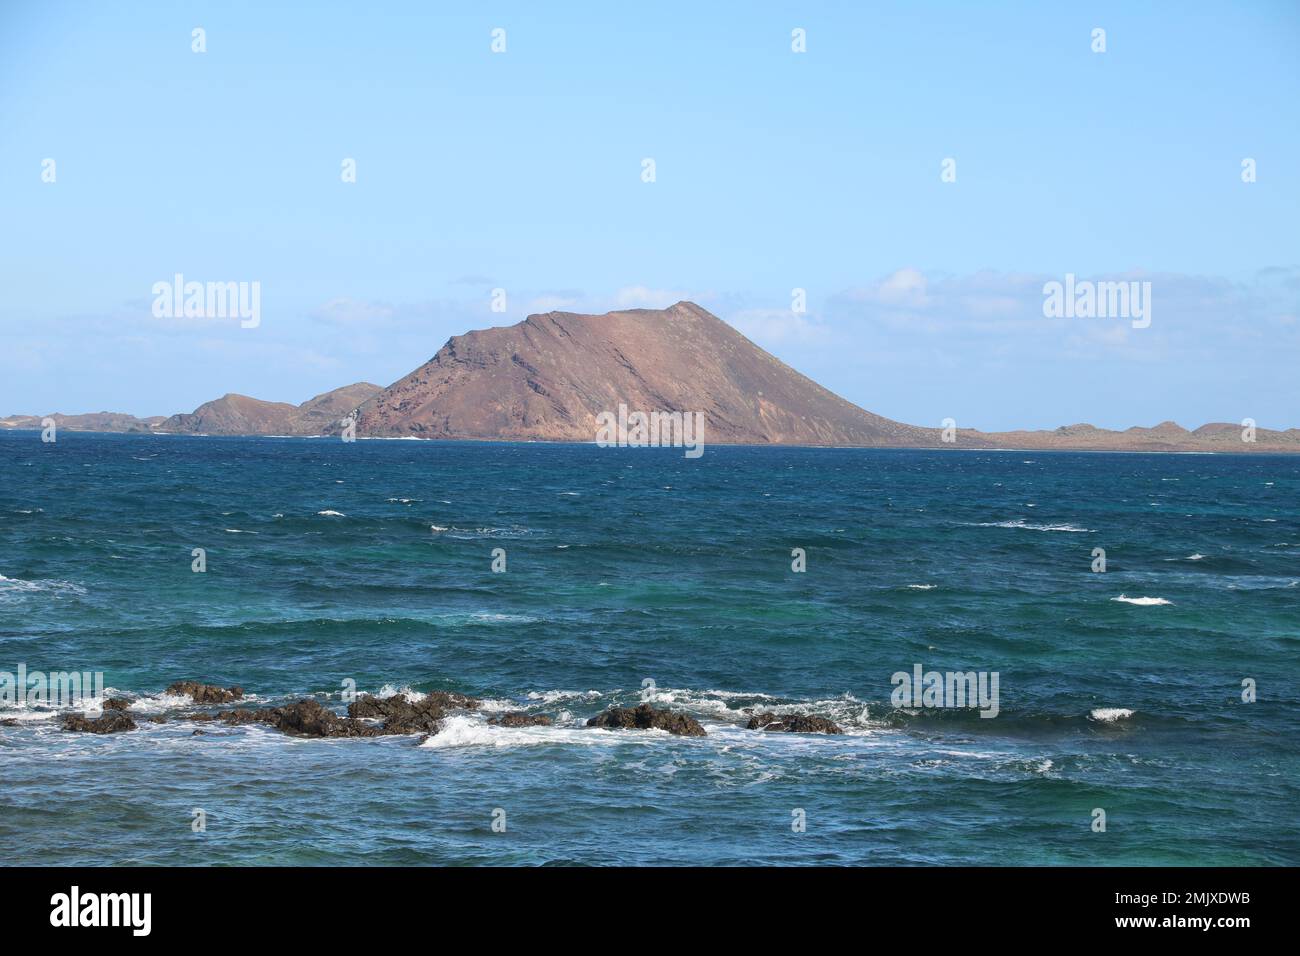 Los Lobos islands off Corralejo, Fuerteventura Stock Photo